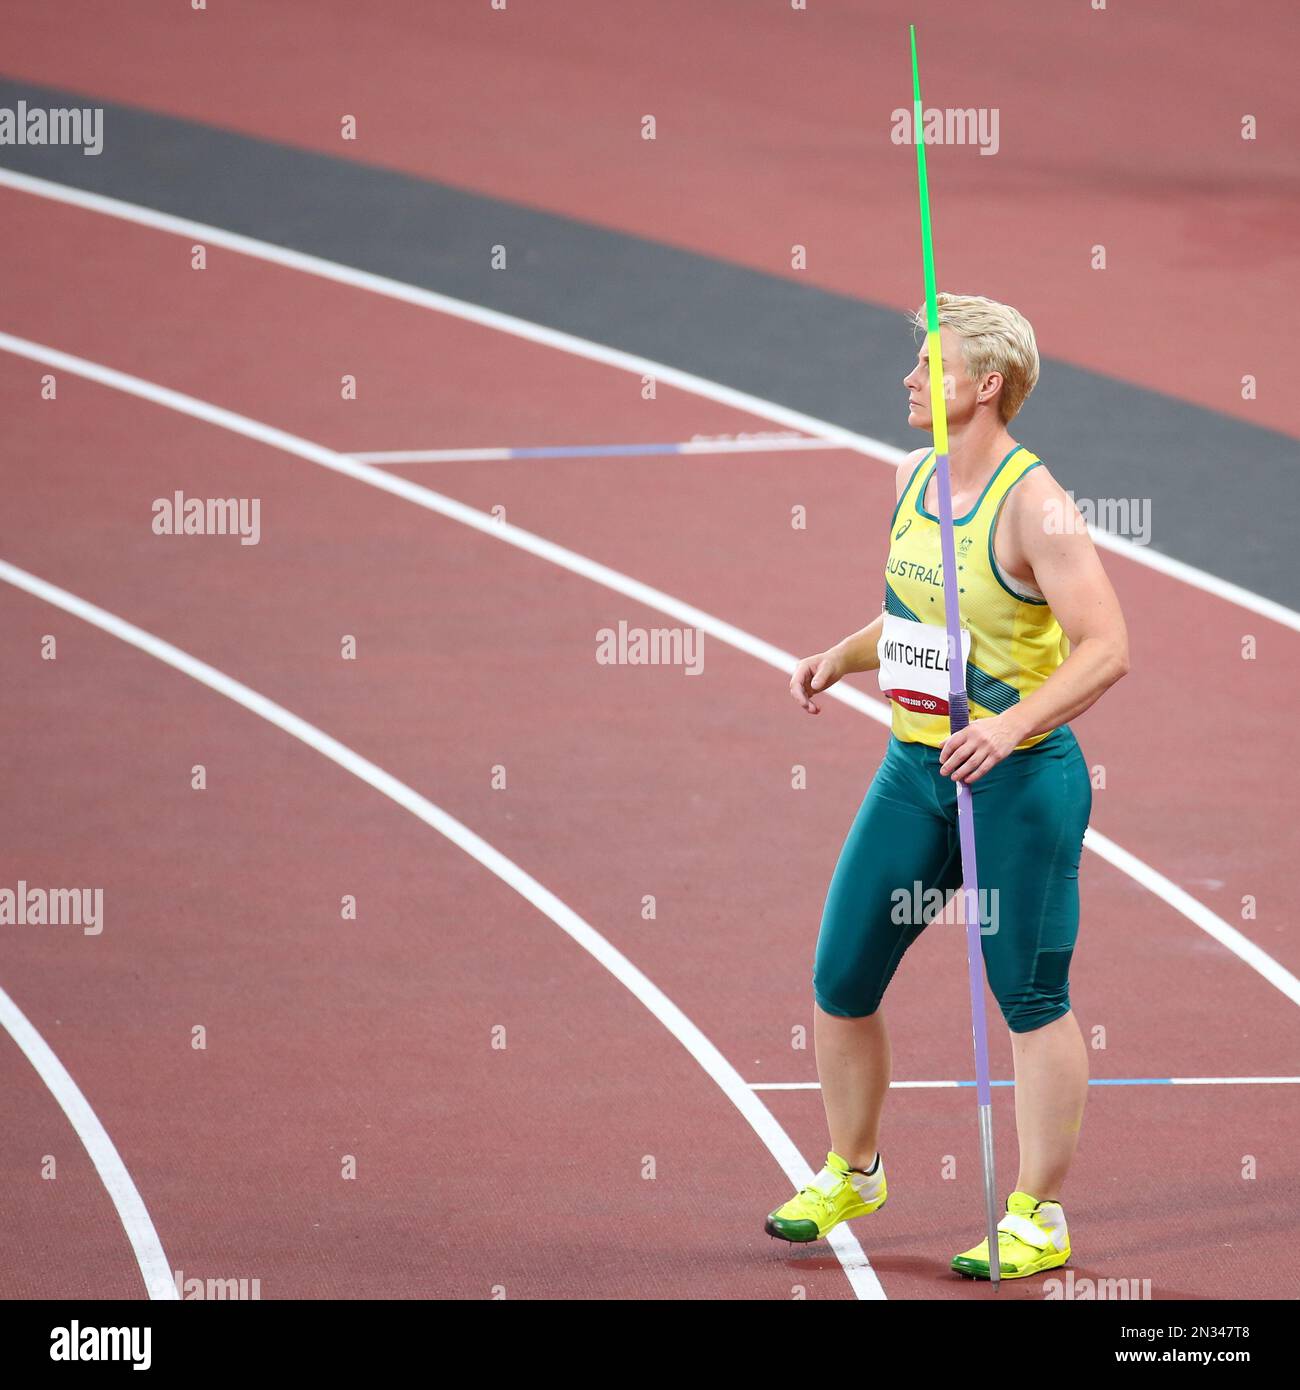 06 AGOSTO 2021 - Tokyo, Giappone: Kathryn Mitchell of Australia nella finale di lancio di Javelin femminile di atletica ai Giochi Olimpici di Tokyo 2020 (Foto: Mickae Foto Stock